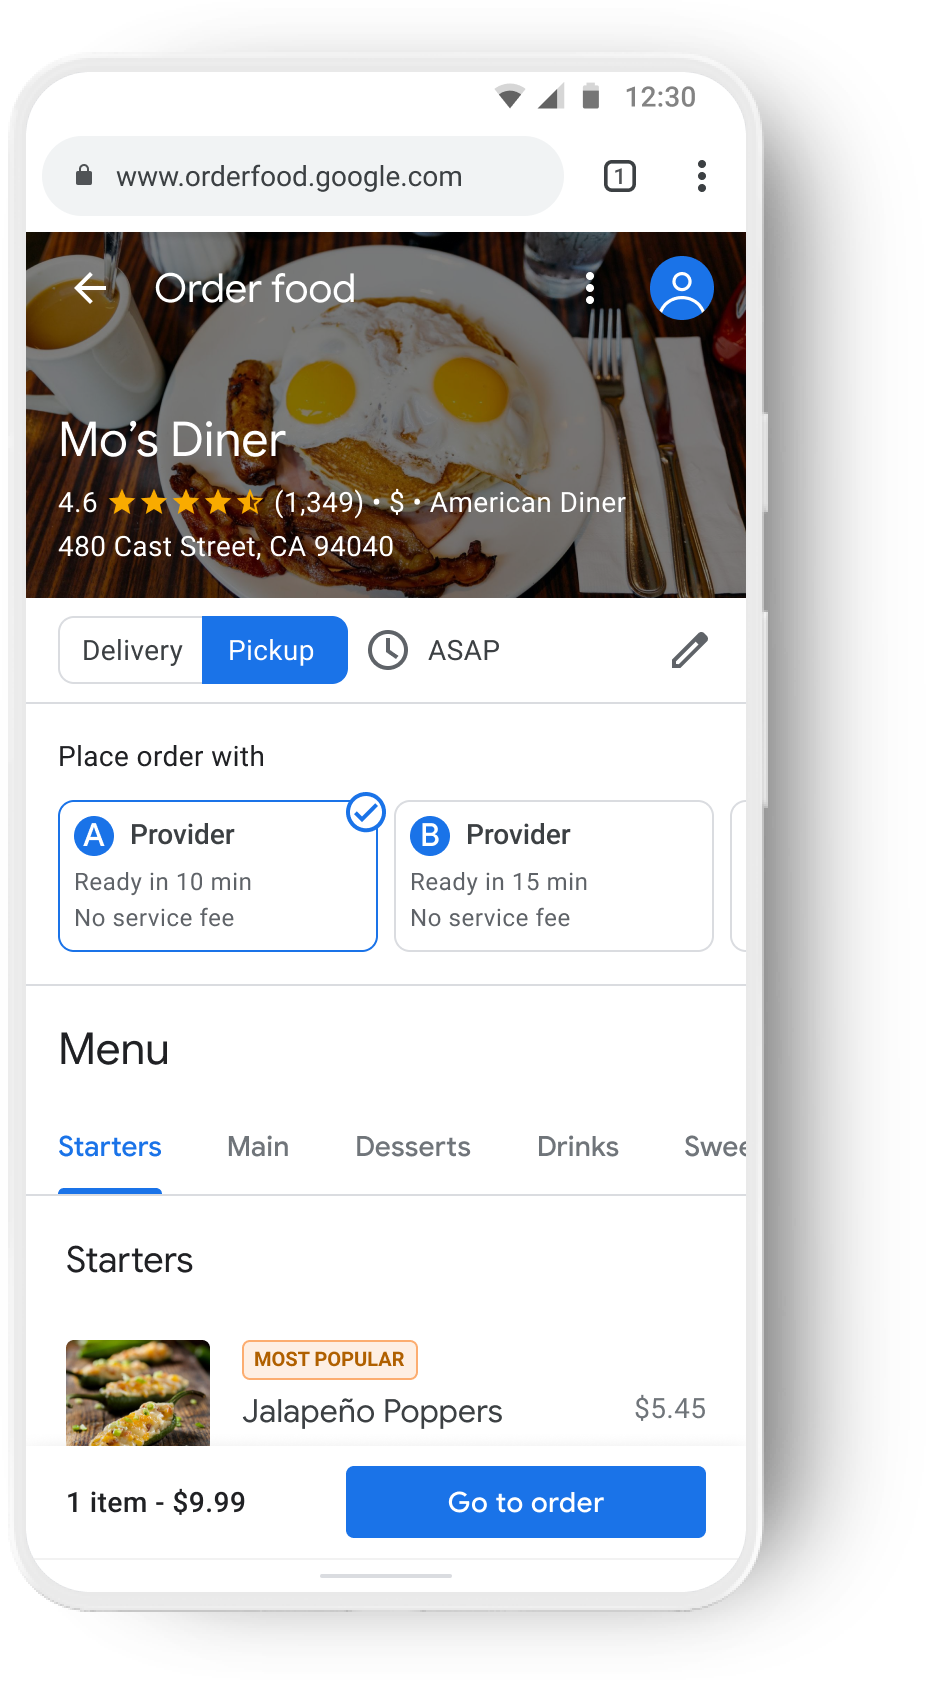 Accesso da dispositivo mobile a un ristorante seguito da due diversi fornitori di servizi di consegna.